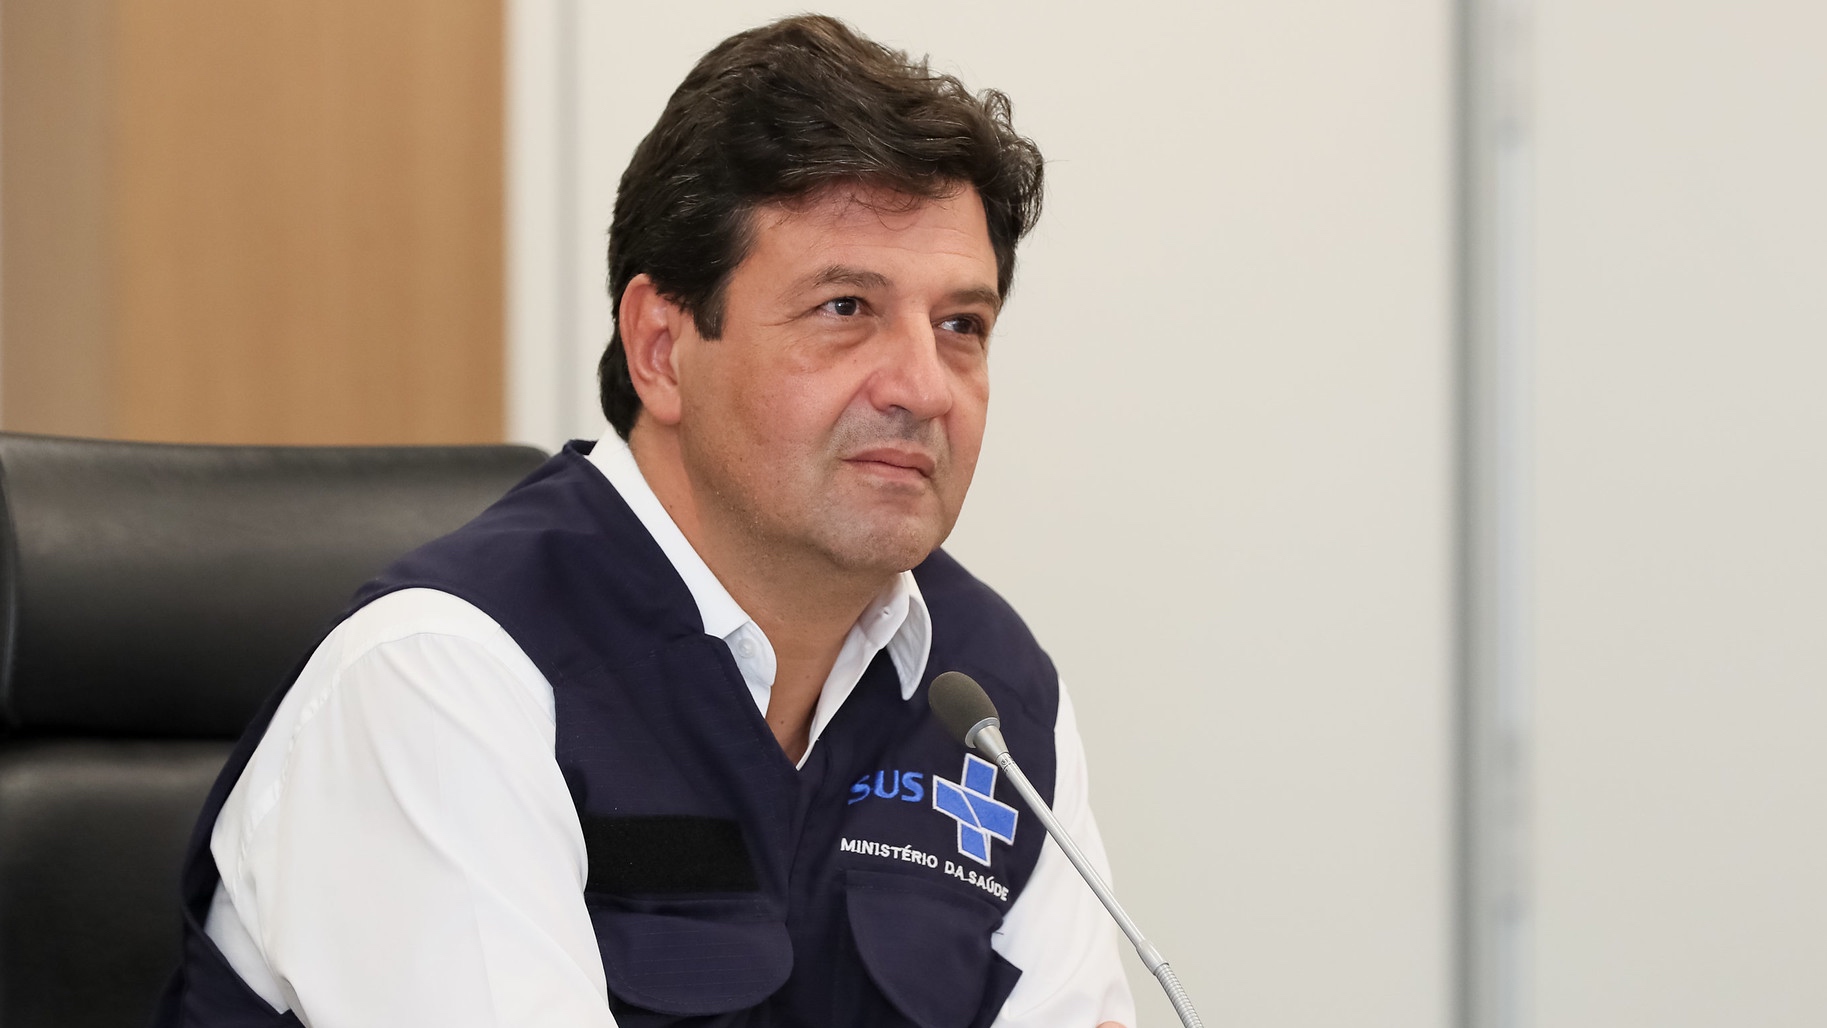 Ministério da Saúde afirma que ‘errou’ ao pedir R$ 410 bilhões a Paulo Guedes